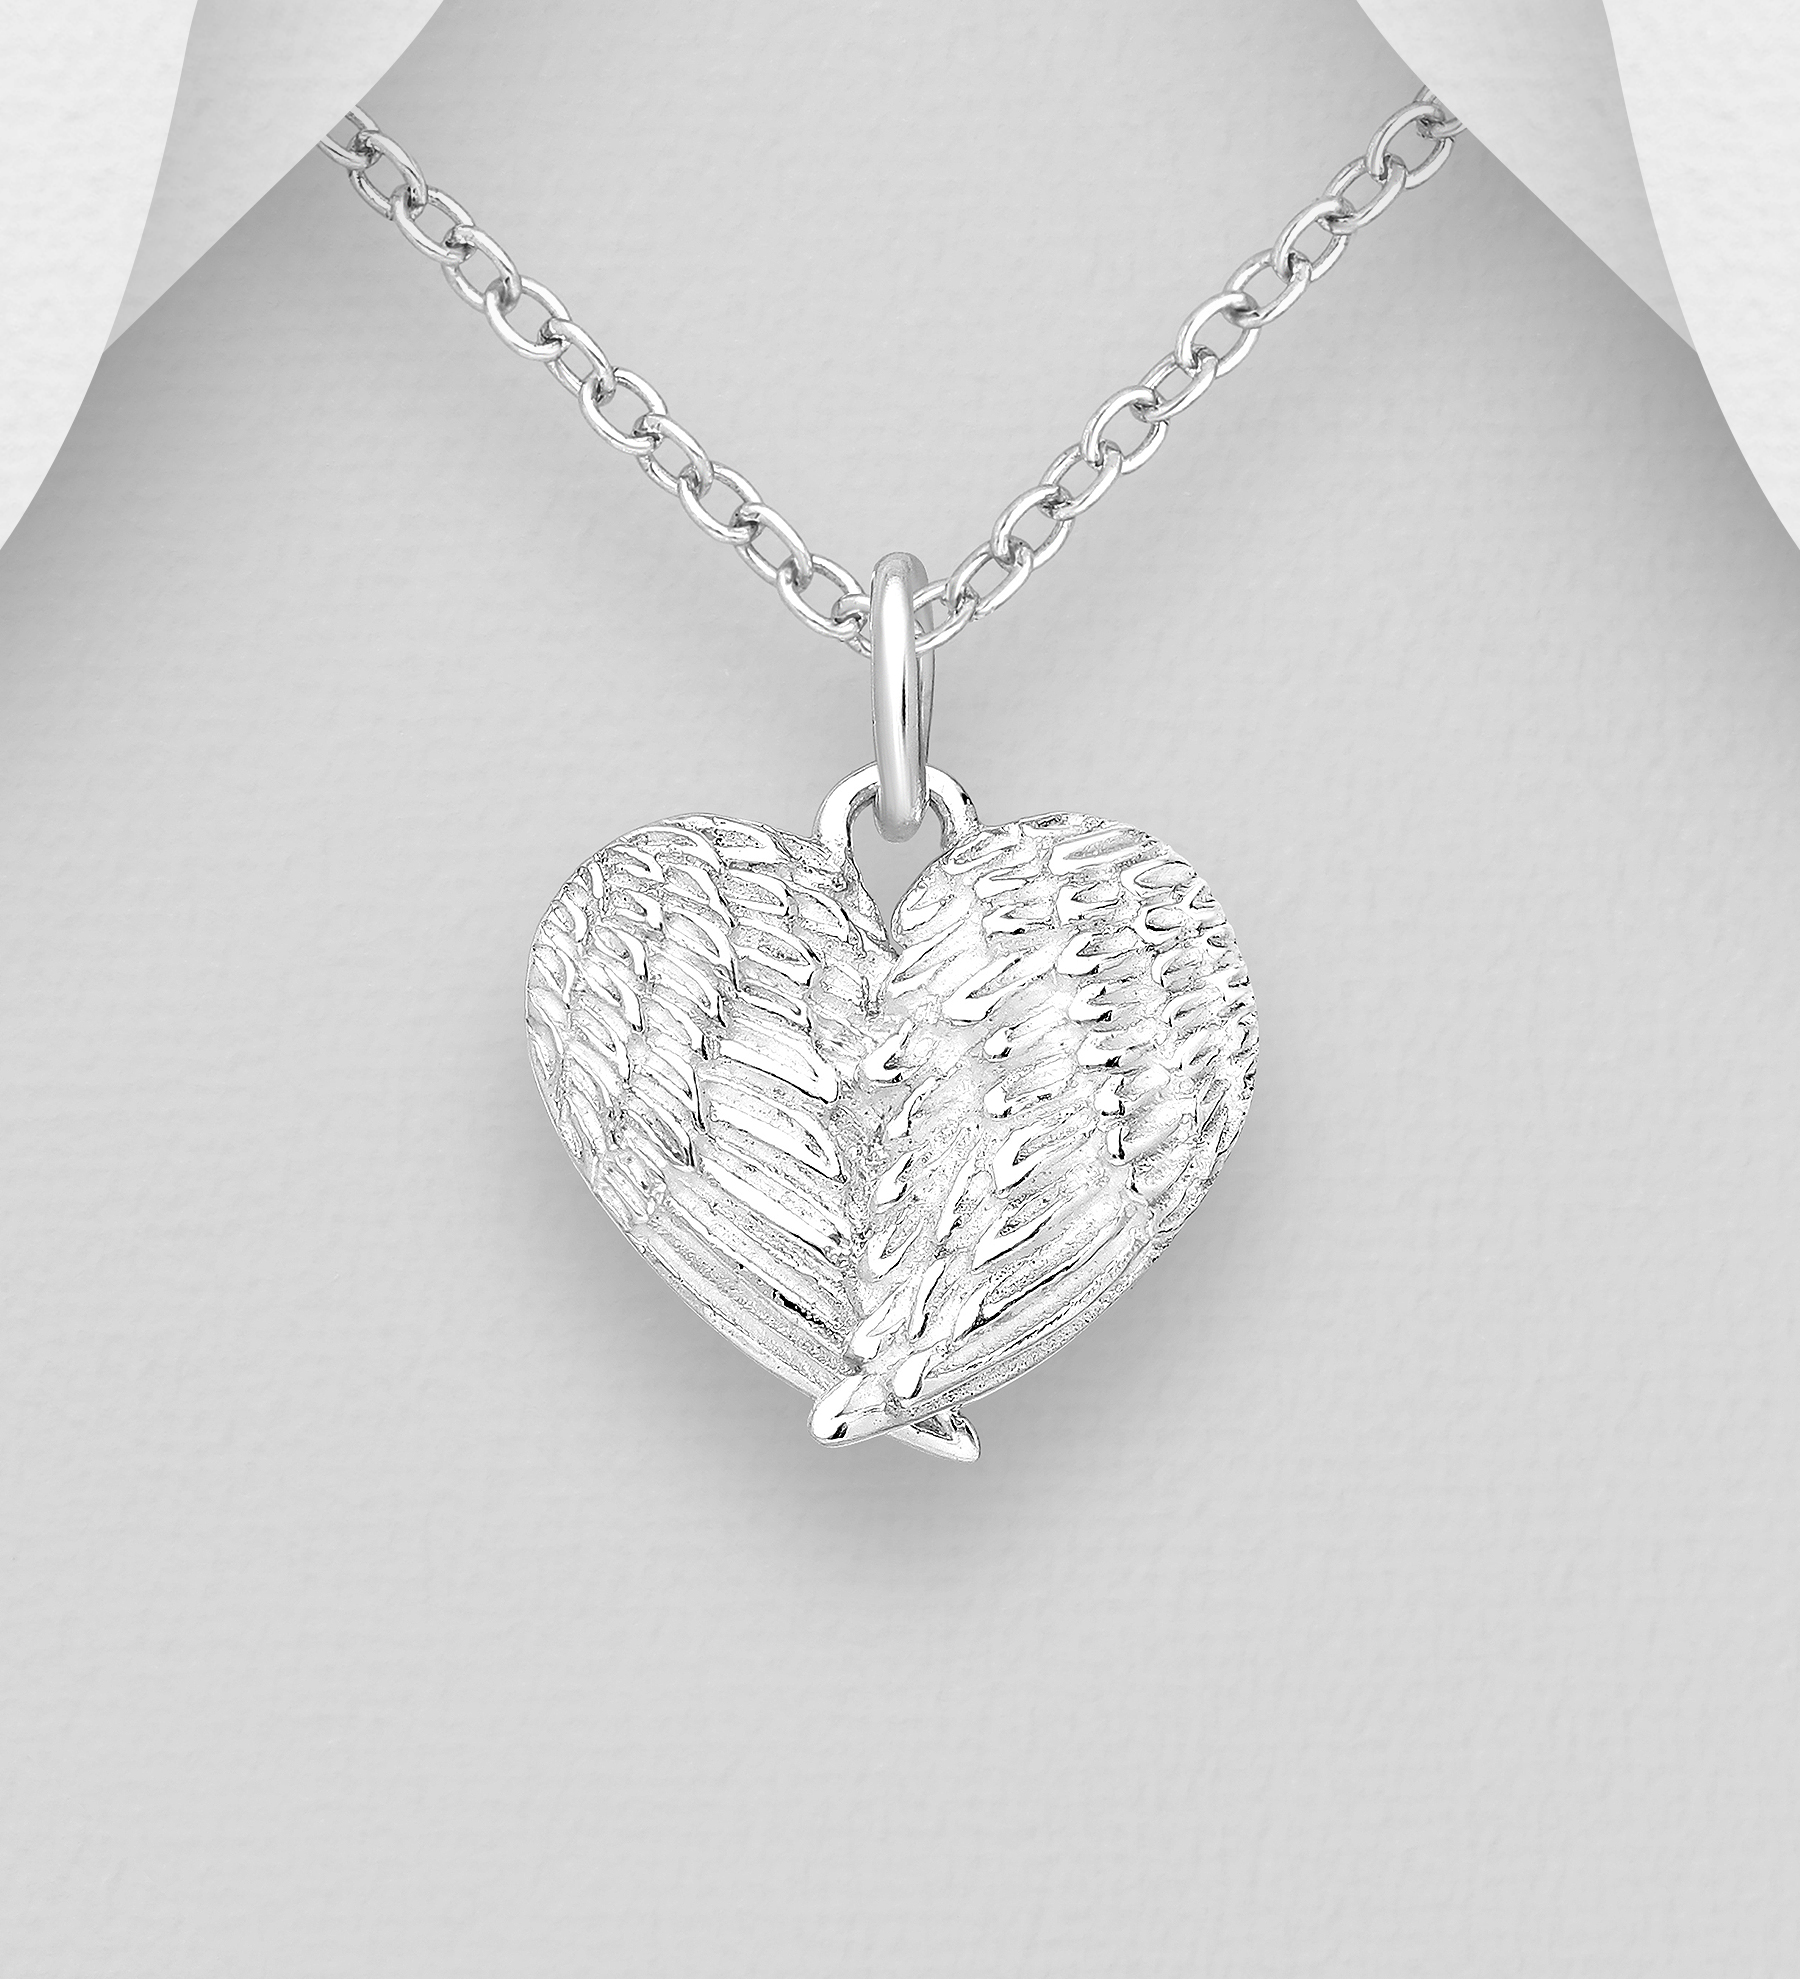 Silverhalsband söta Änglavingar formade som ett Hjärta - vackert halsband till tjej/ dam i äkta 925 sterling silver